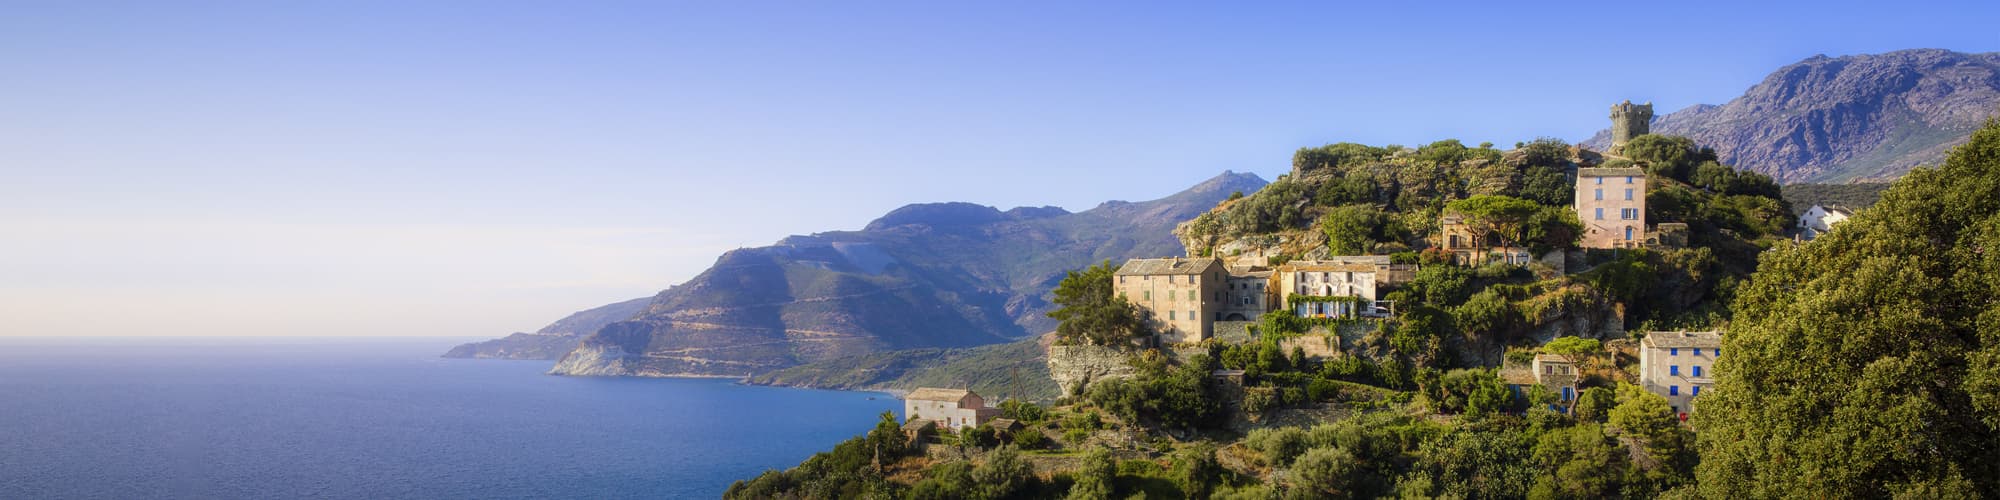 Voyages en liberté en Corse